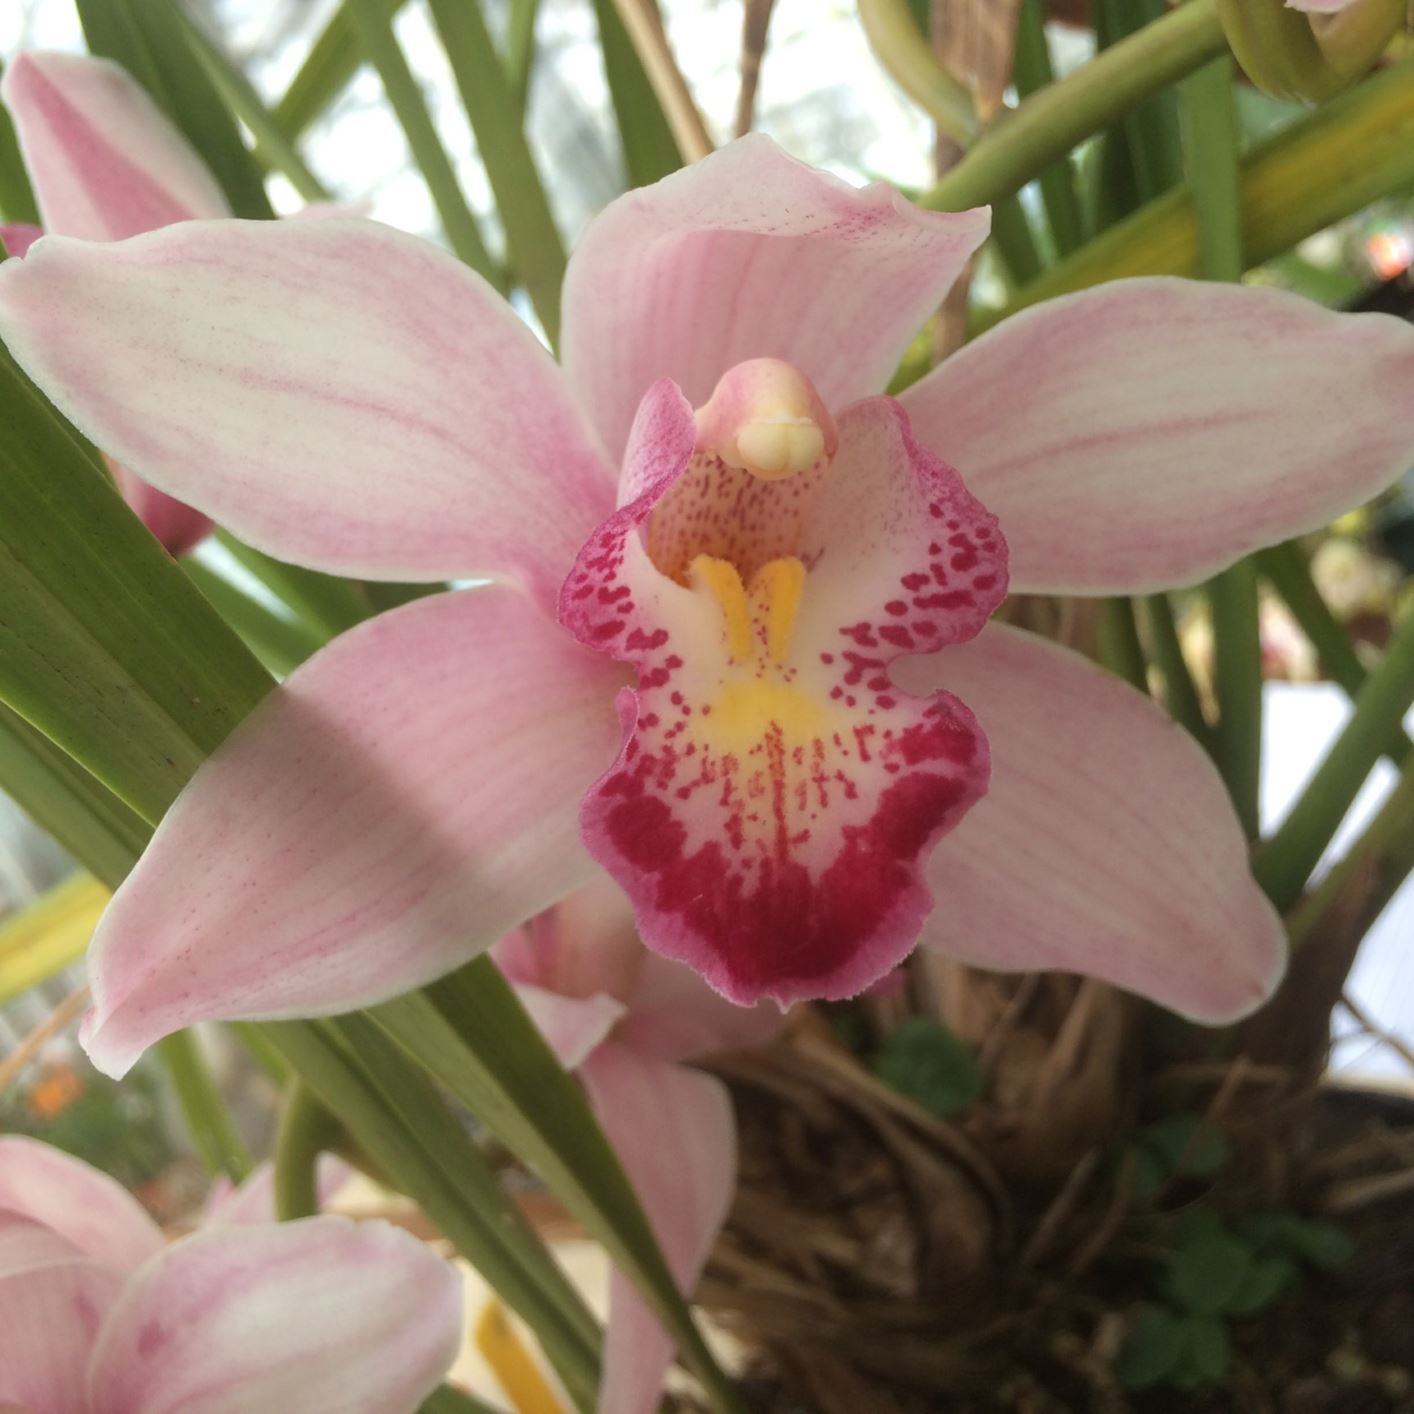 Cymbidium Via Avanti 'Serena' - cymbidium orchid, orchid